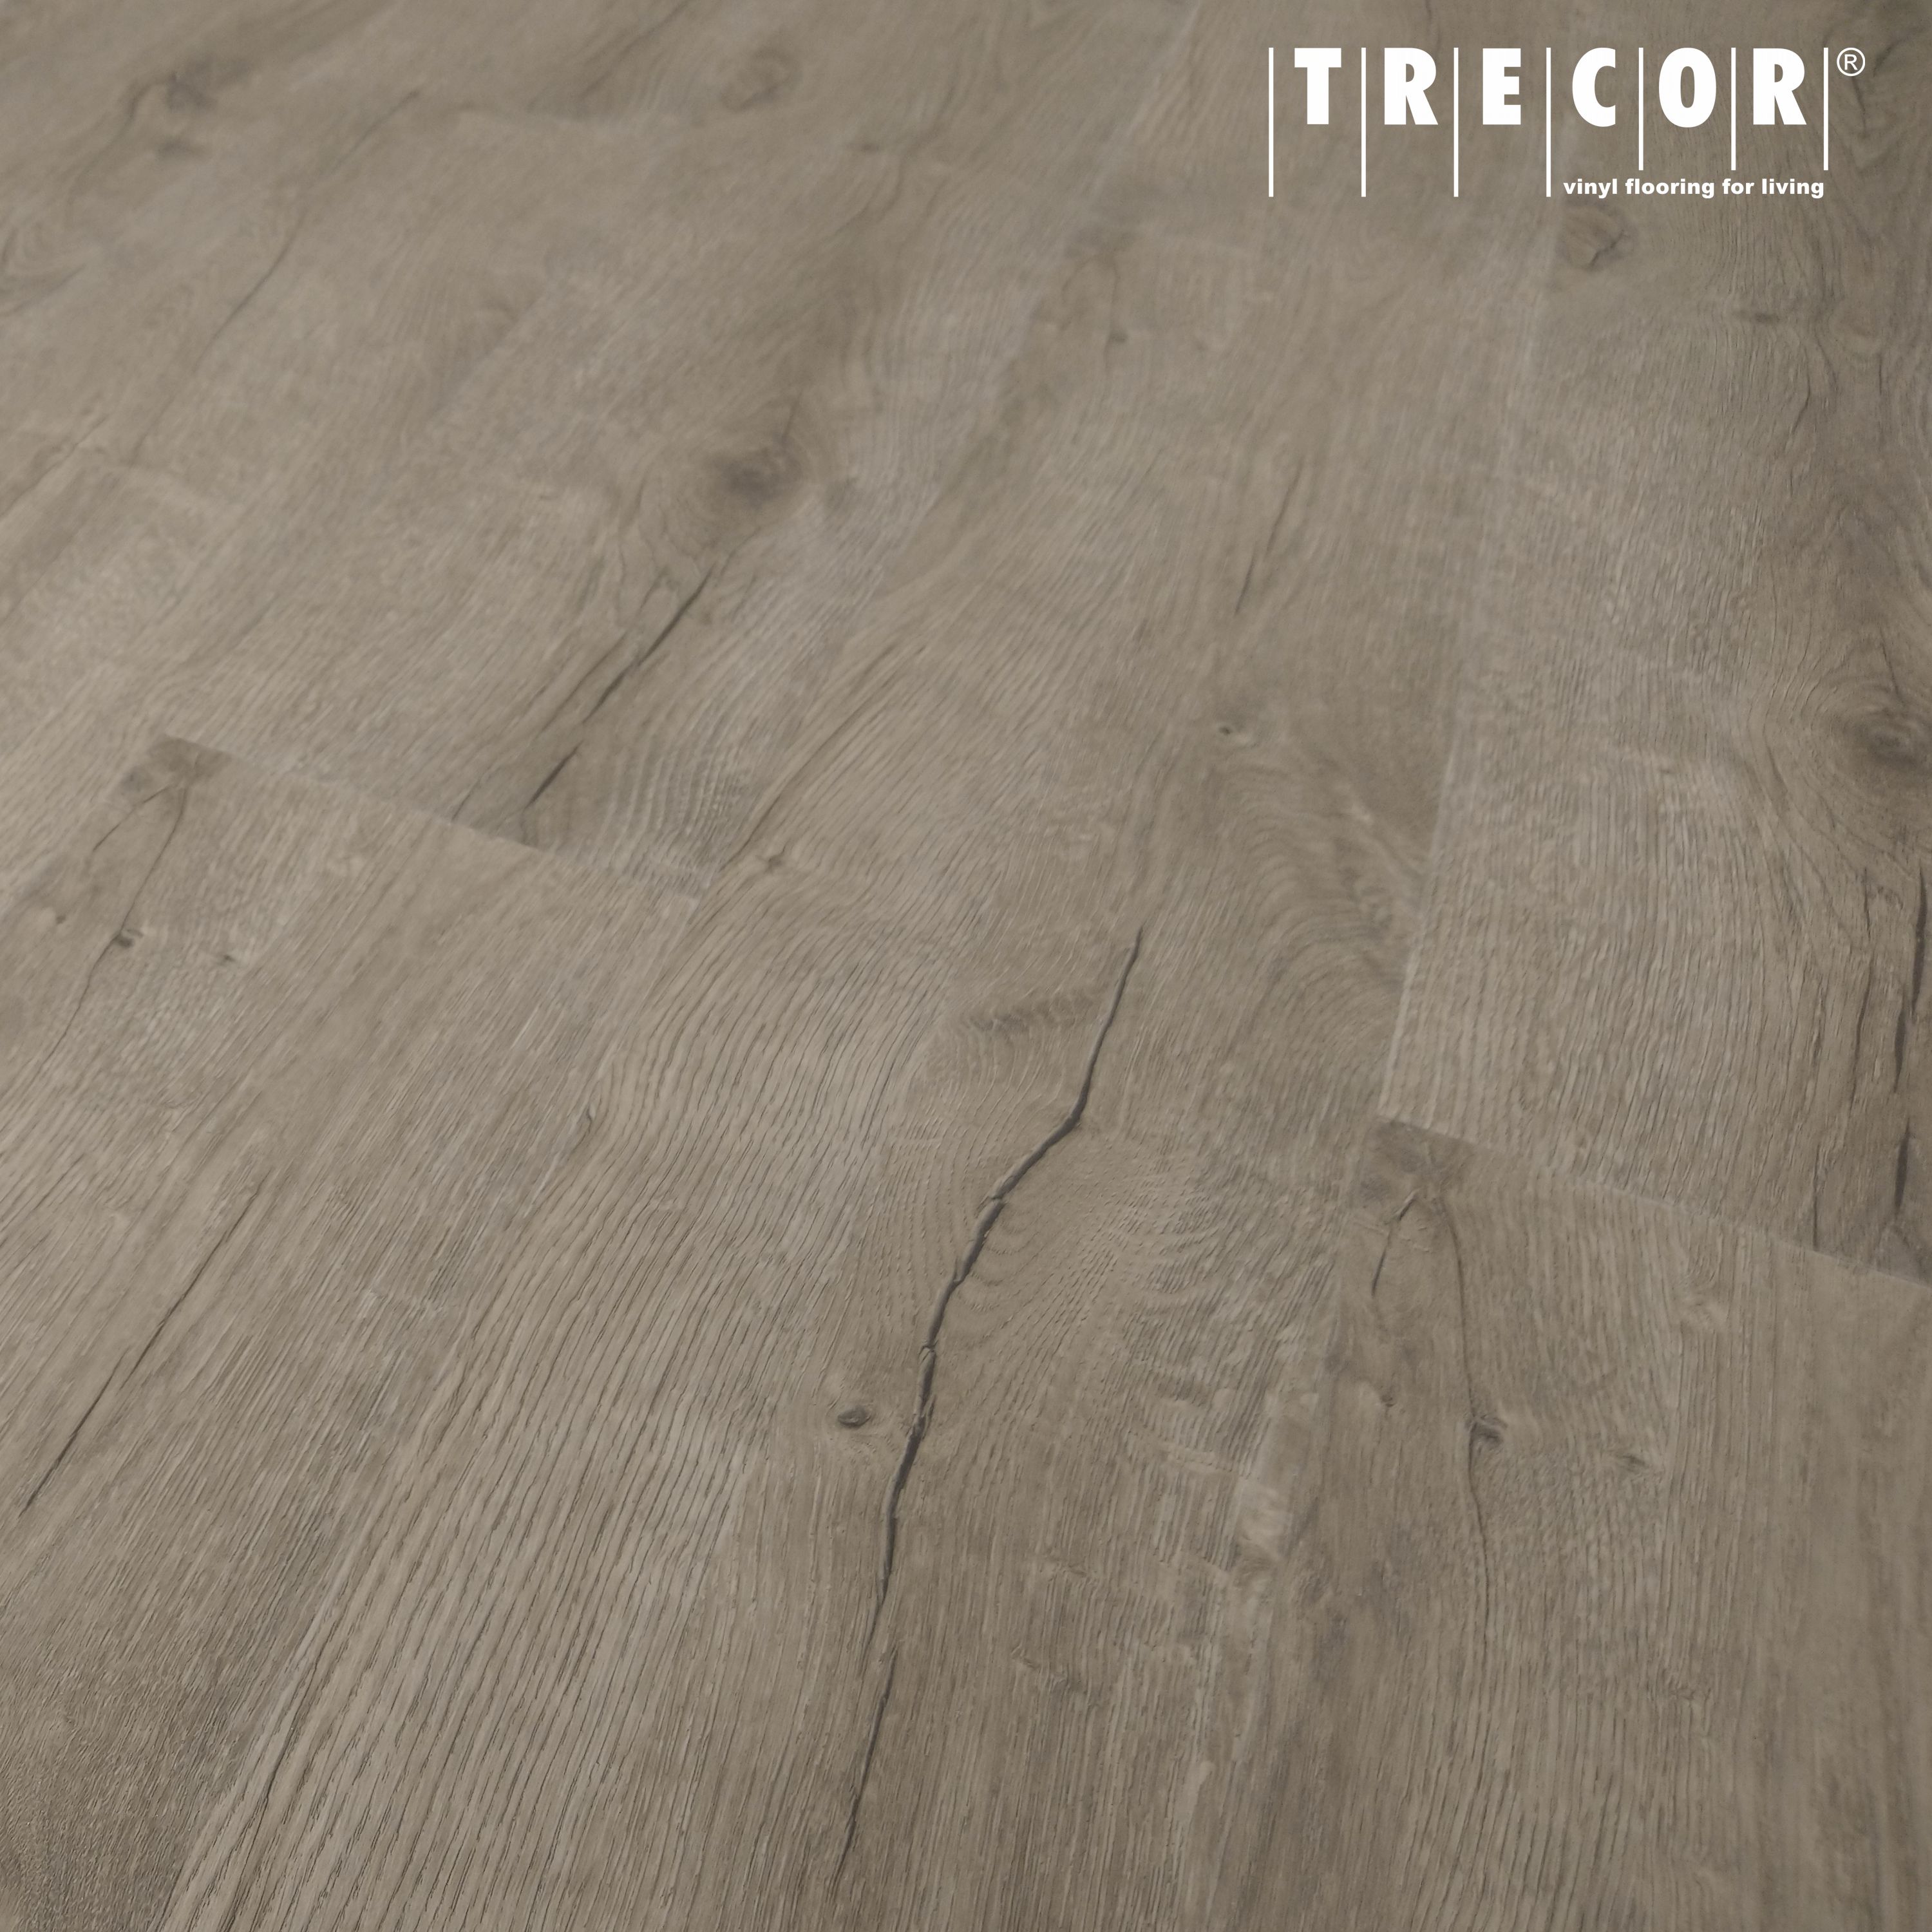 Tepcor® Vinylboden zum klicken |Zement grau NZ 0,55 27,50 €//m²